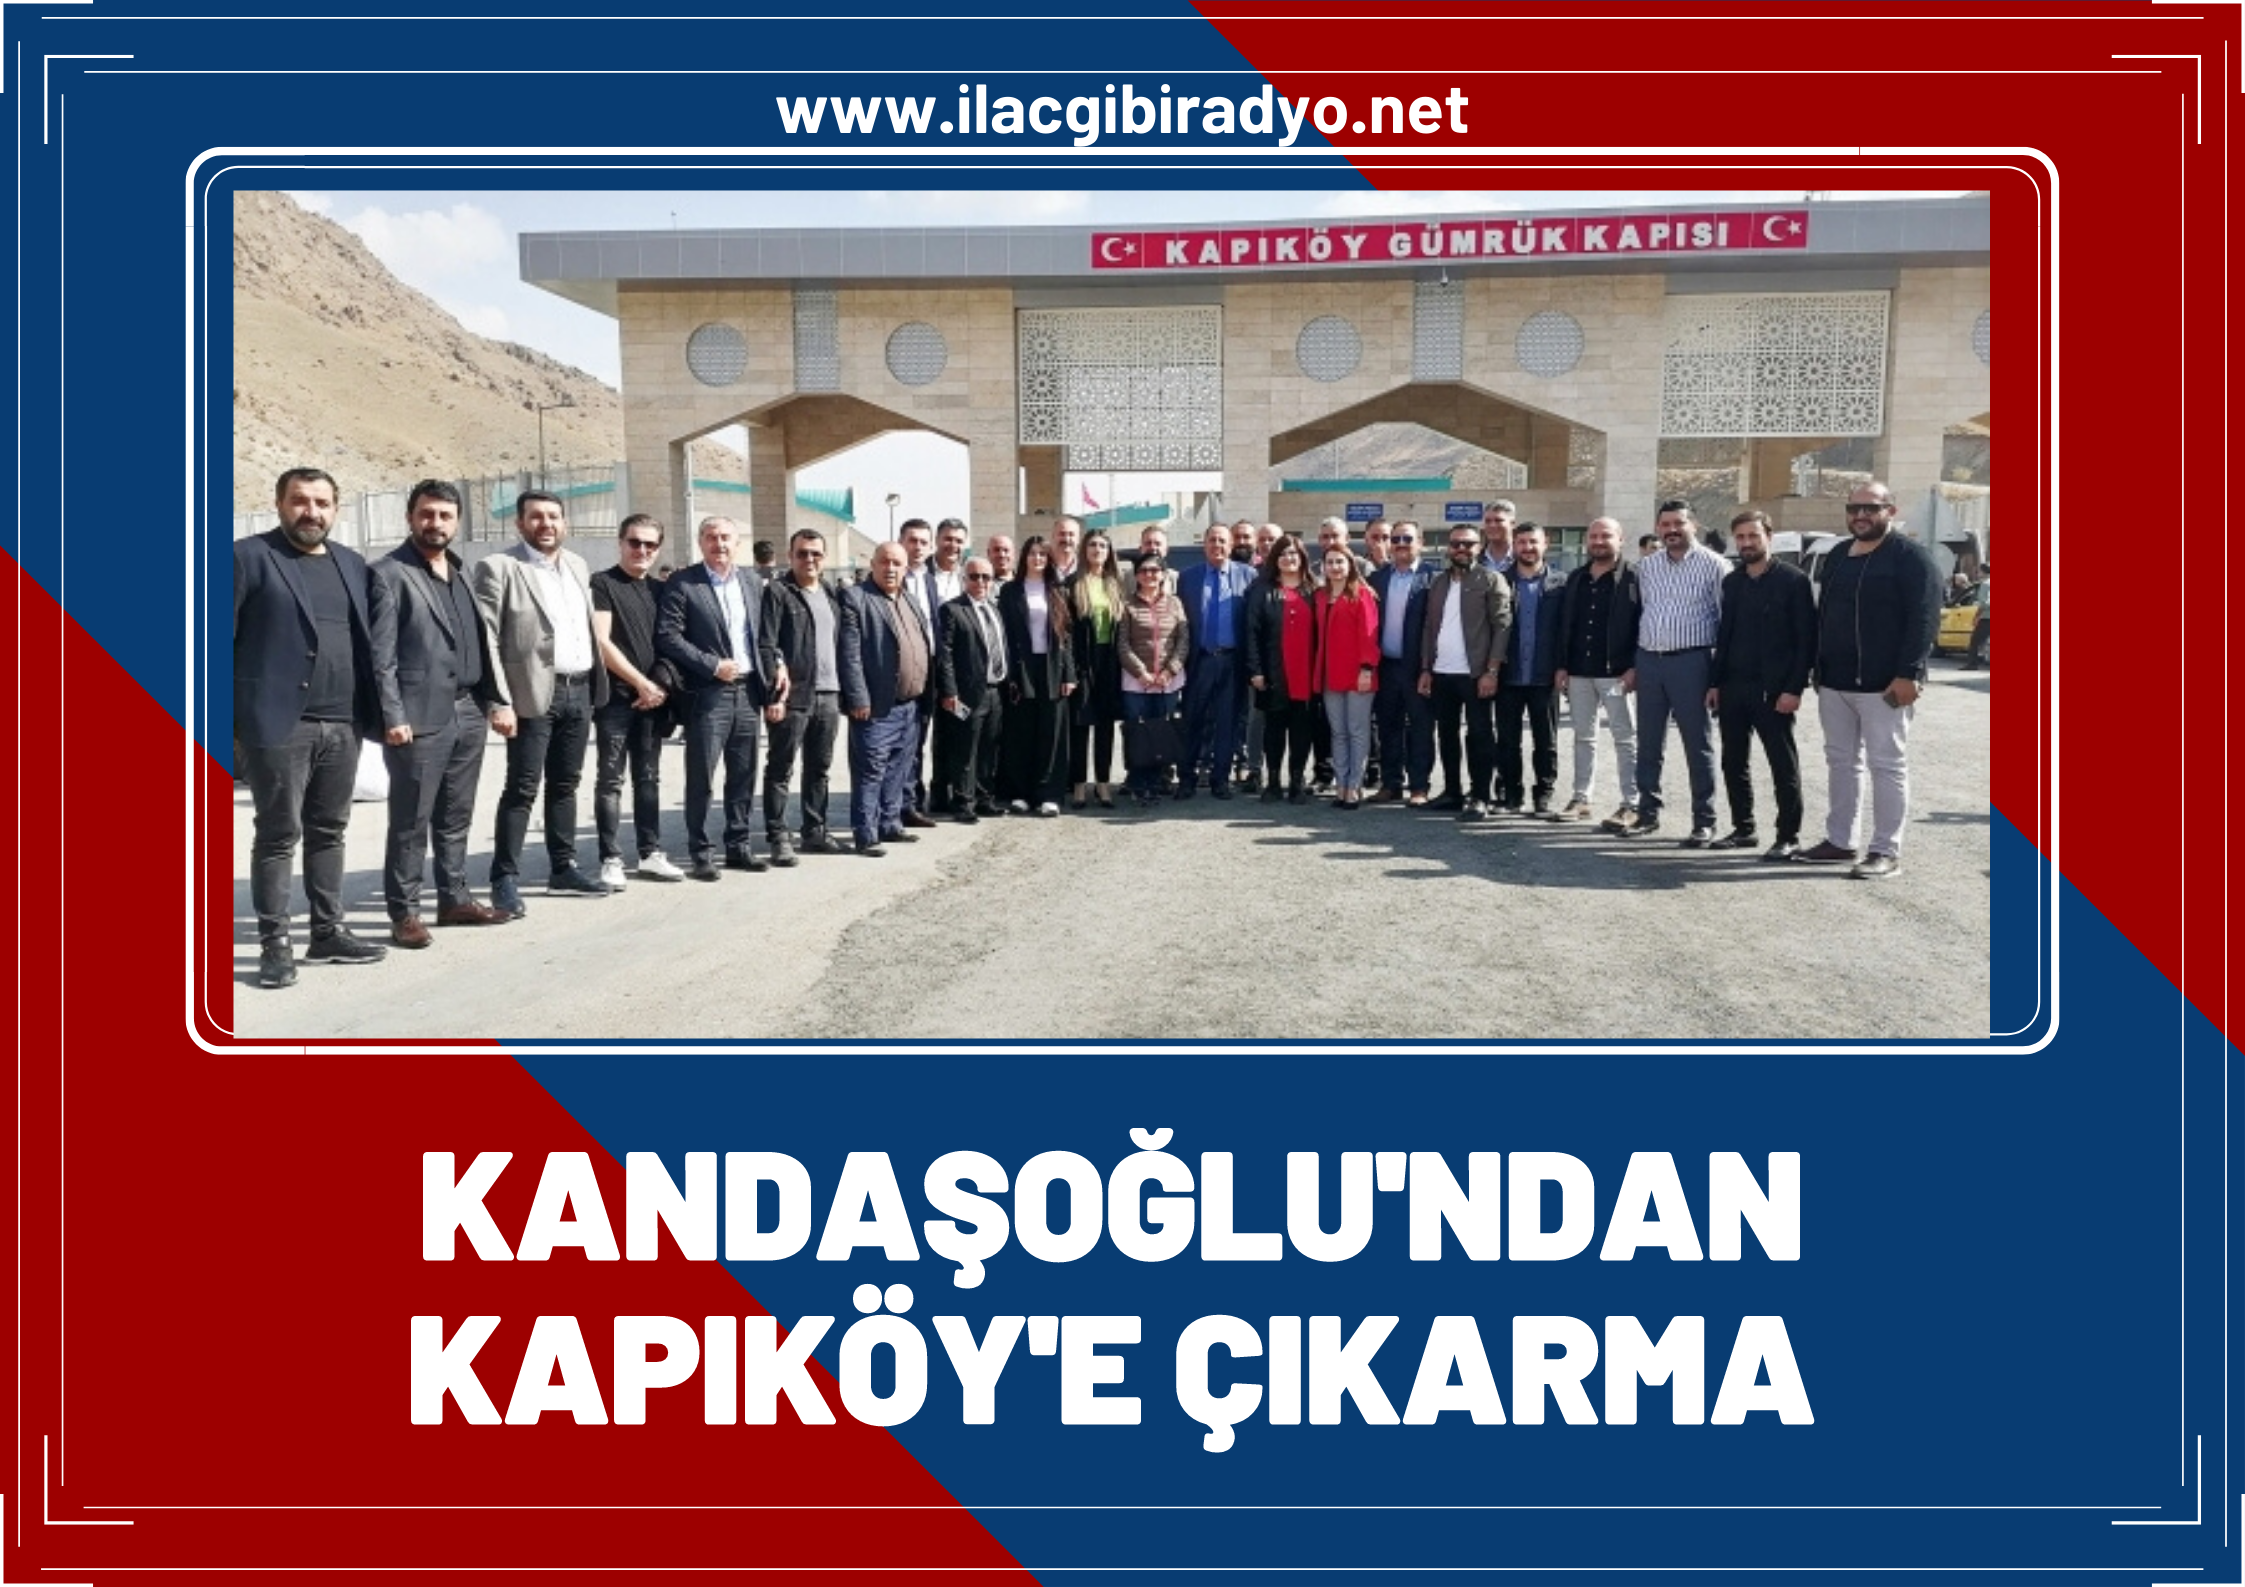 Kandaşoğlu, beyaz liste üyeleri ile Kapıköy’e çıkarma yaptı!